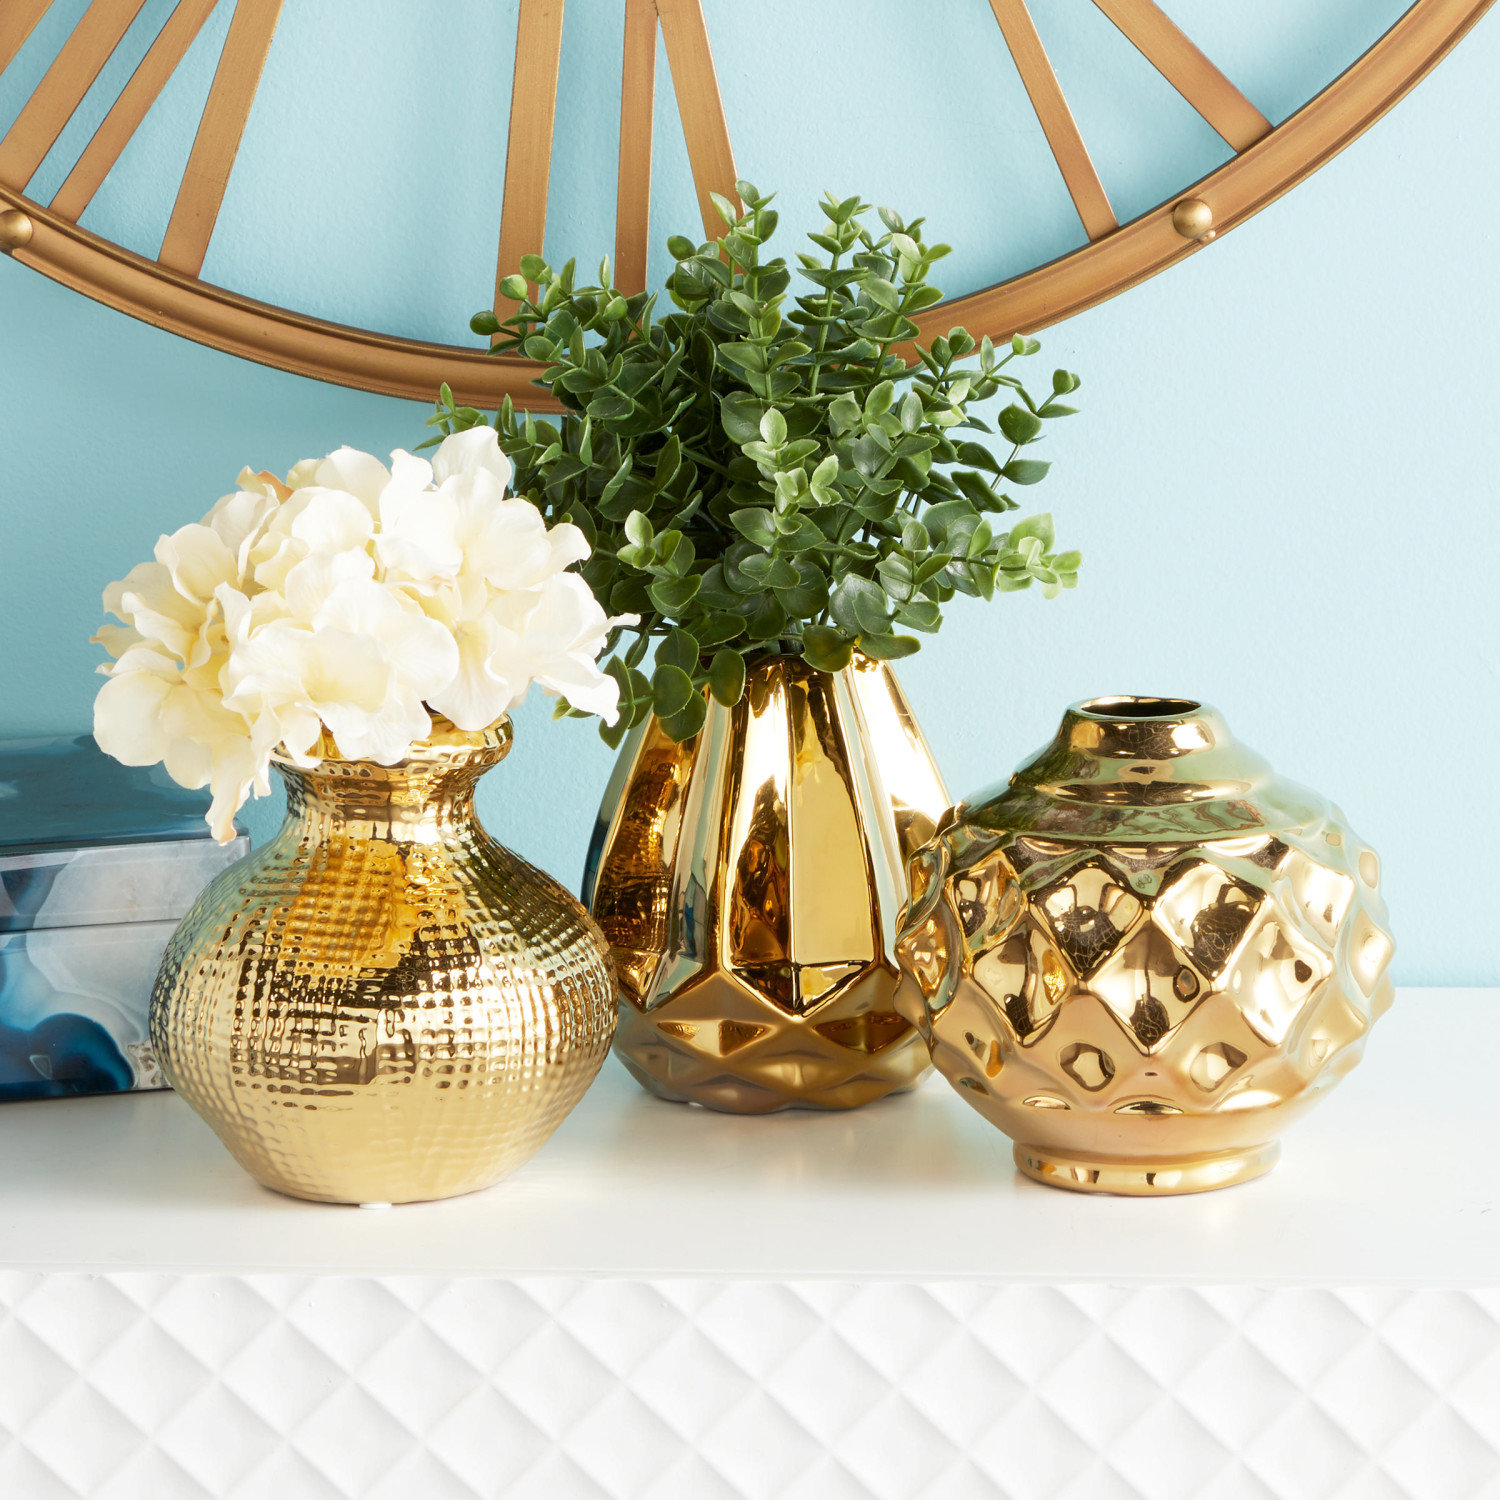 Talianna Oro Vase, White & Gold